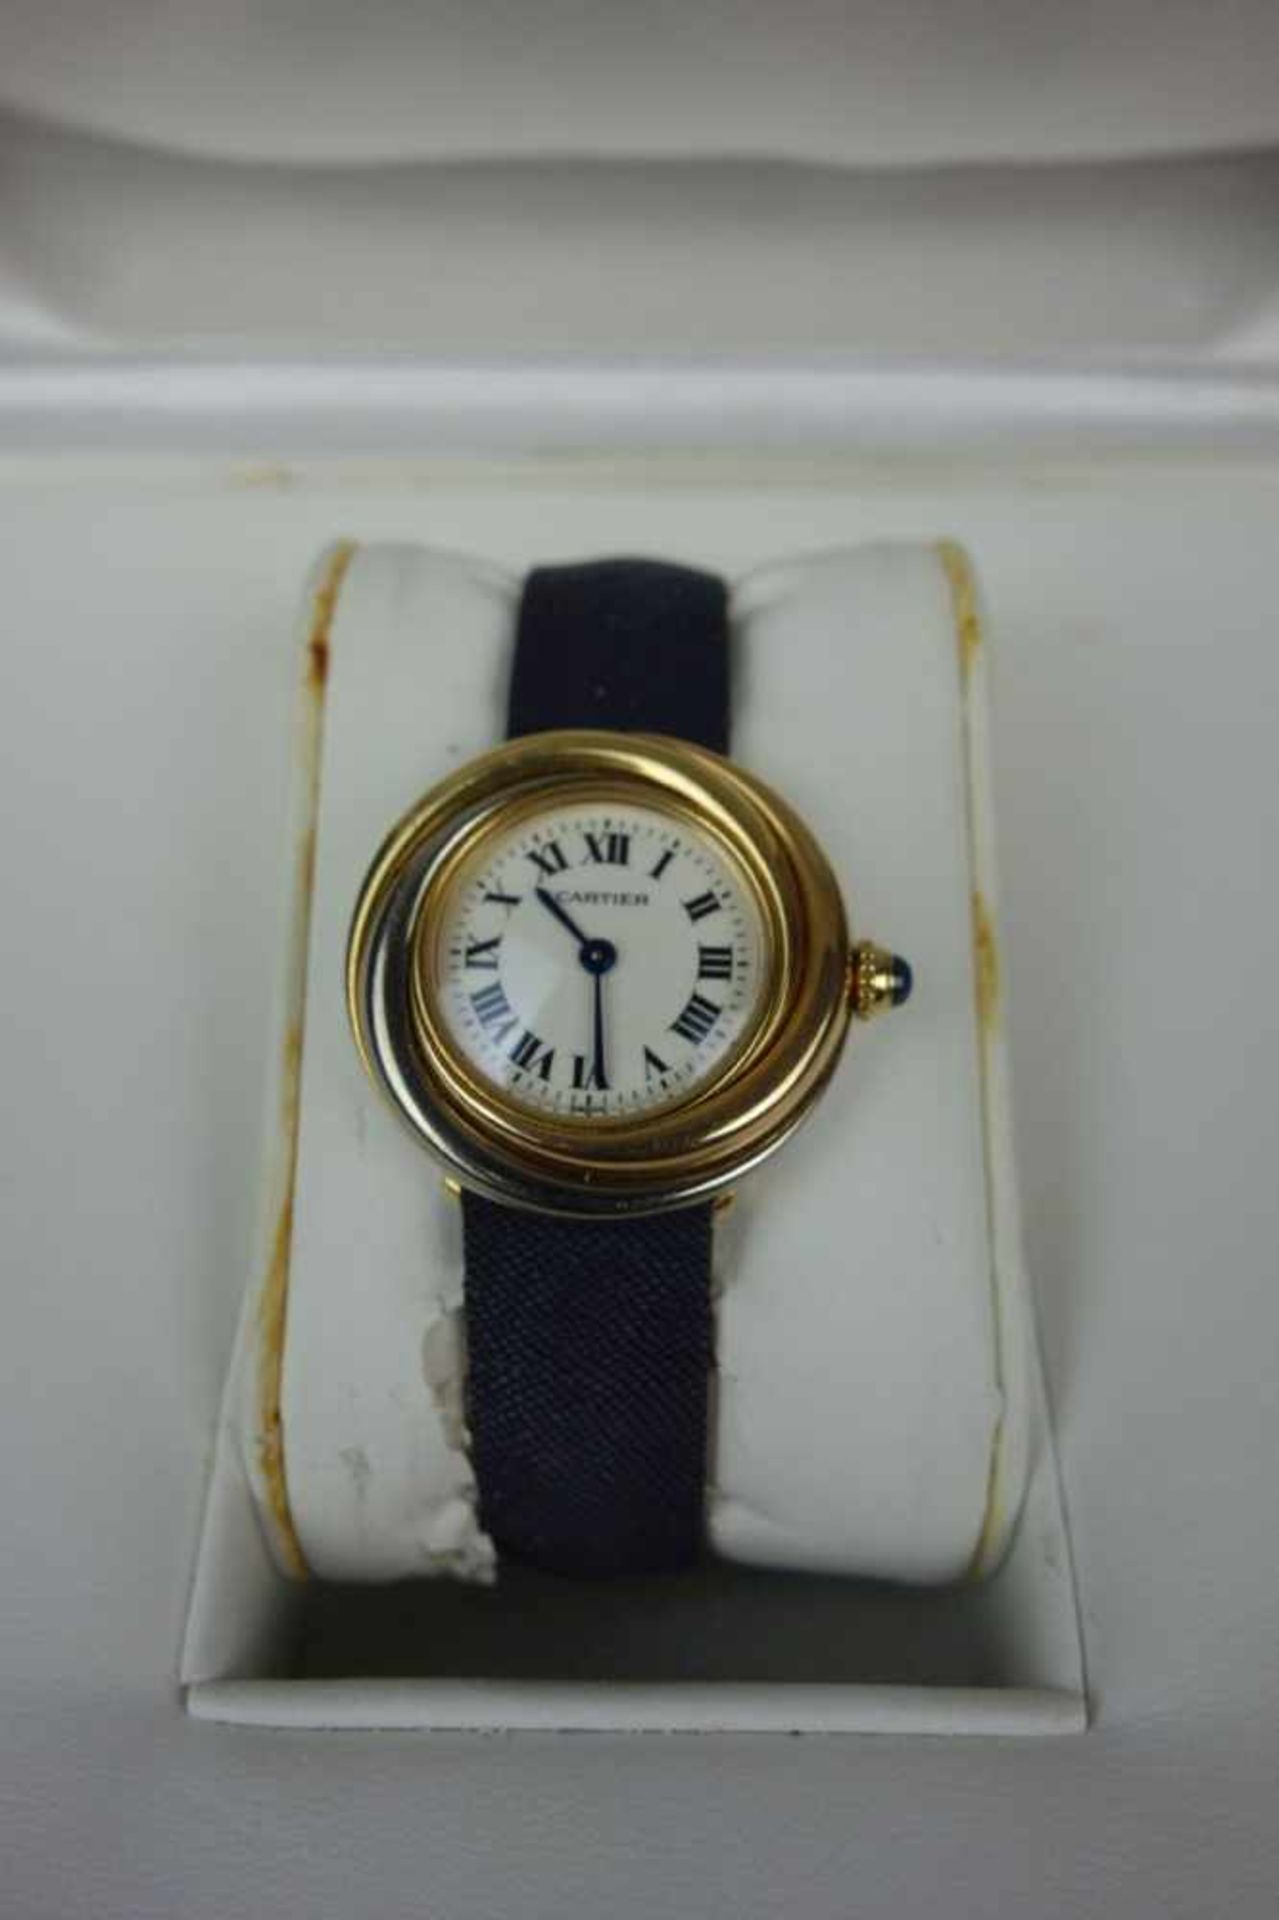 DAMEN ARMBANDUHR - CARTIER TRINITY / ladys wristwatch, Quartz-Uhr, 1998, Manufaktur Cartier / - Bild 3 aus 7